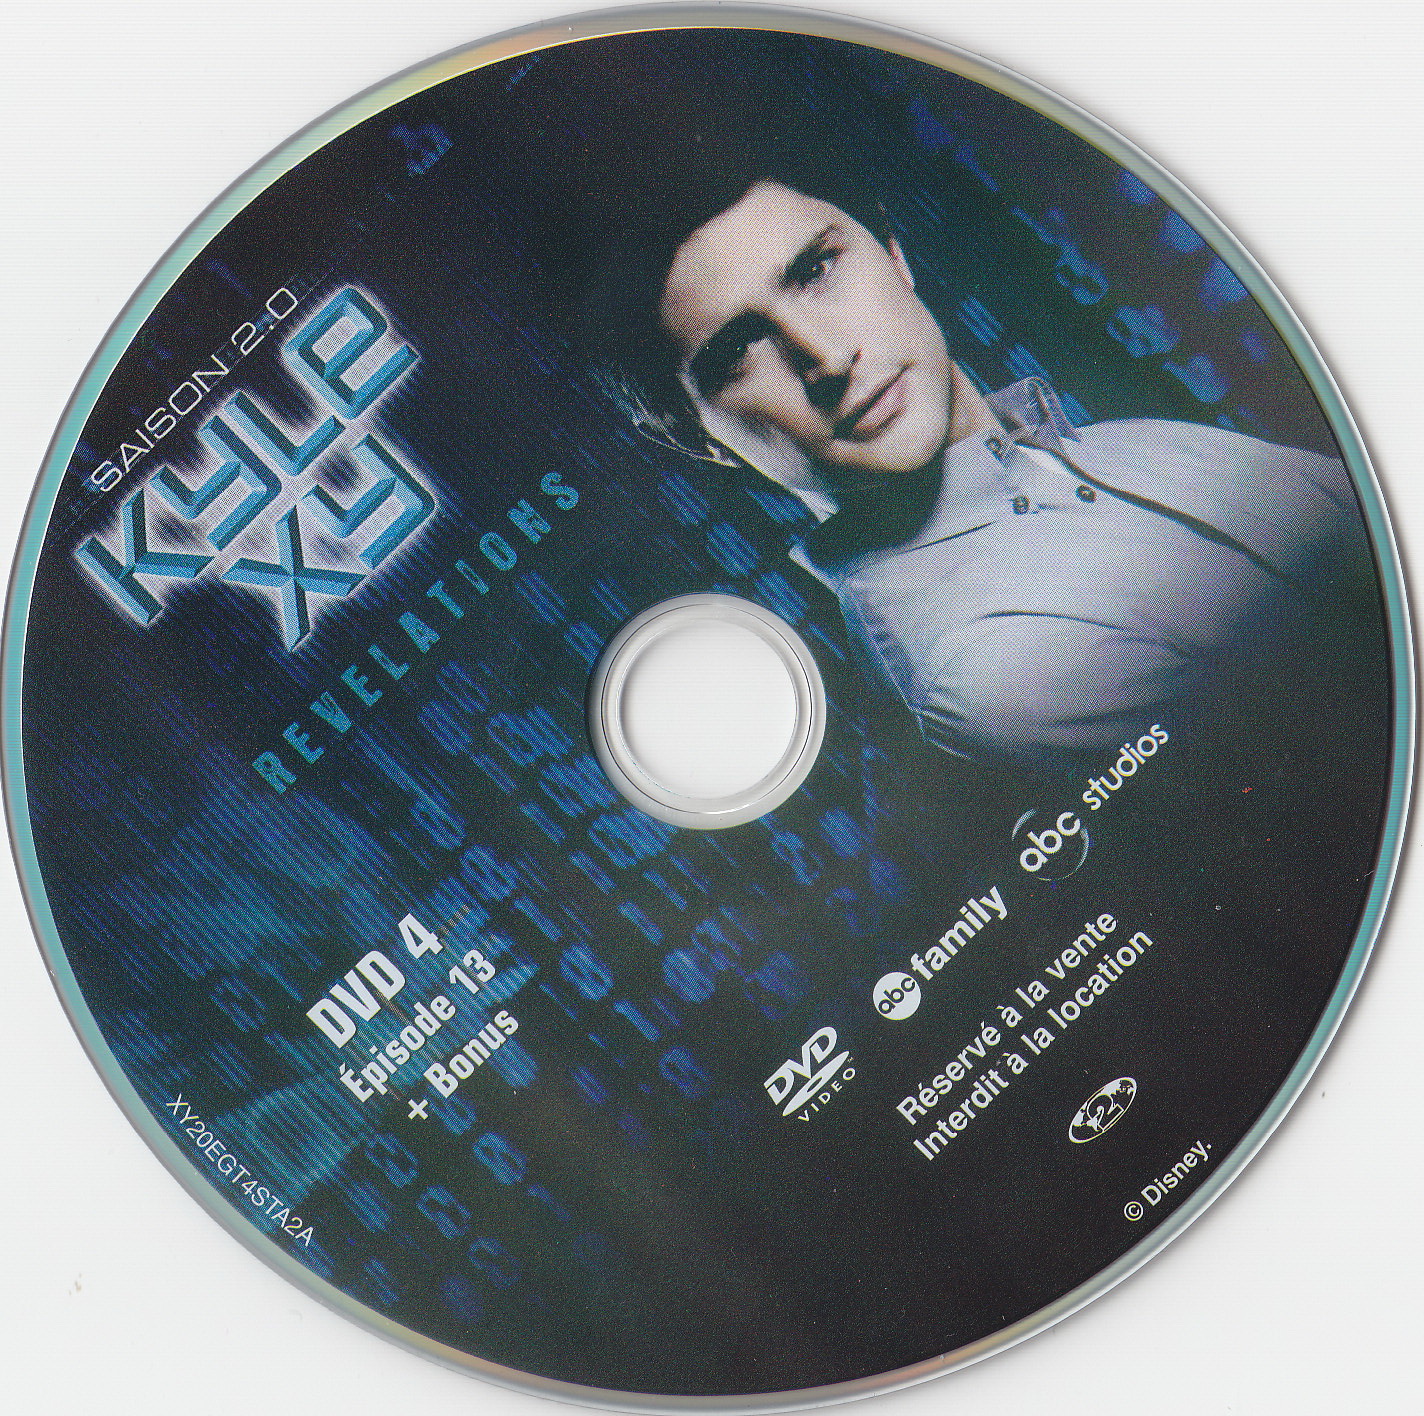 Kyle XY saison 2 DVD 4